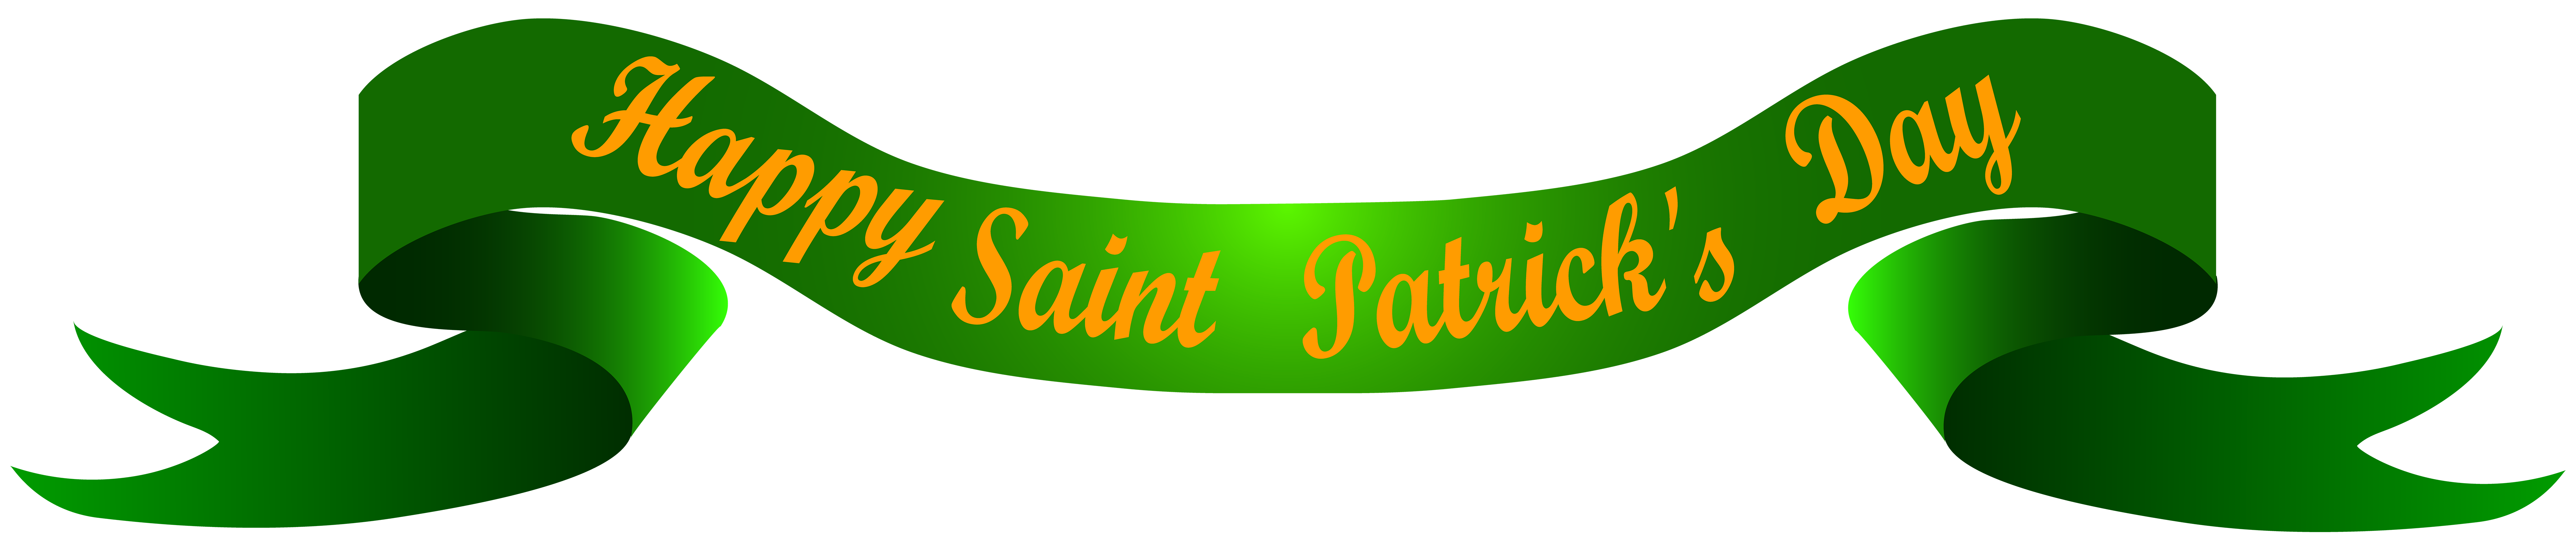 Patrick'S Saint Banner Transparent Day Happy Clipart